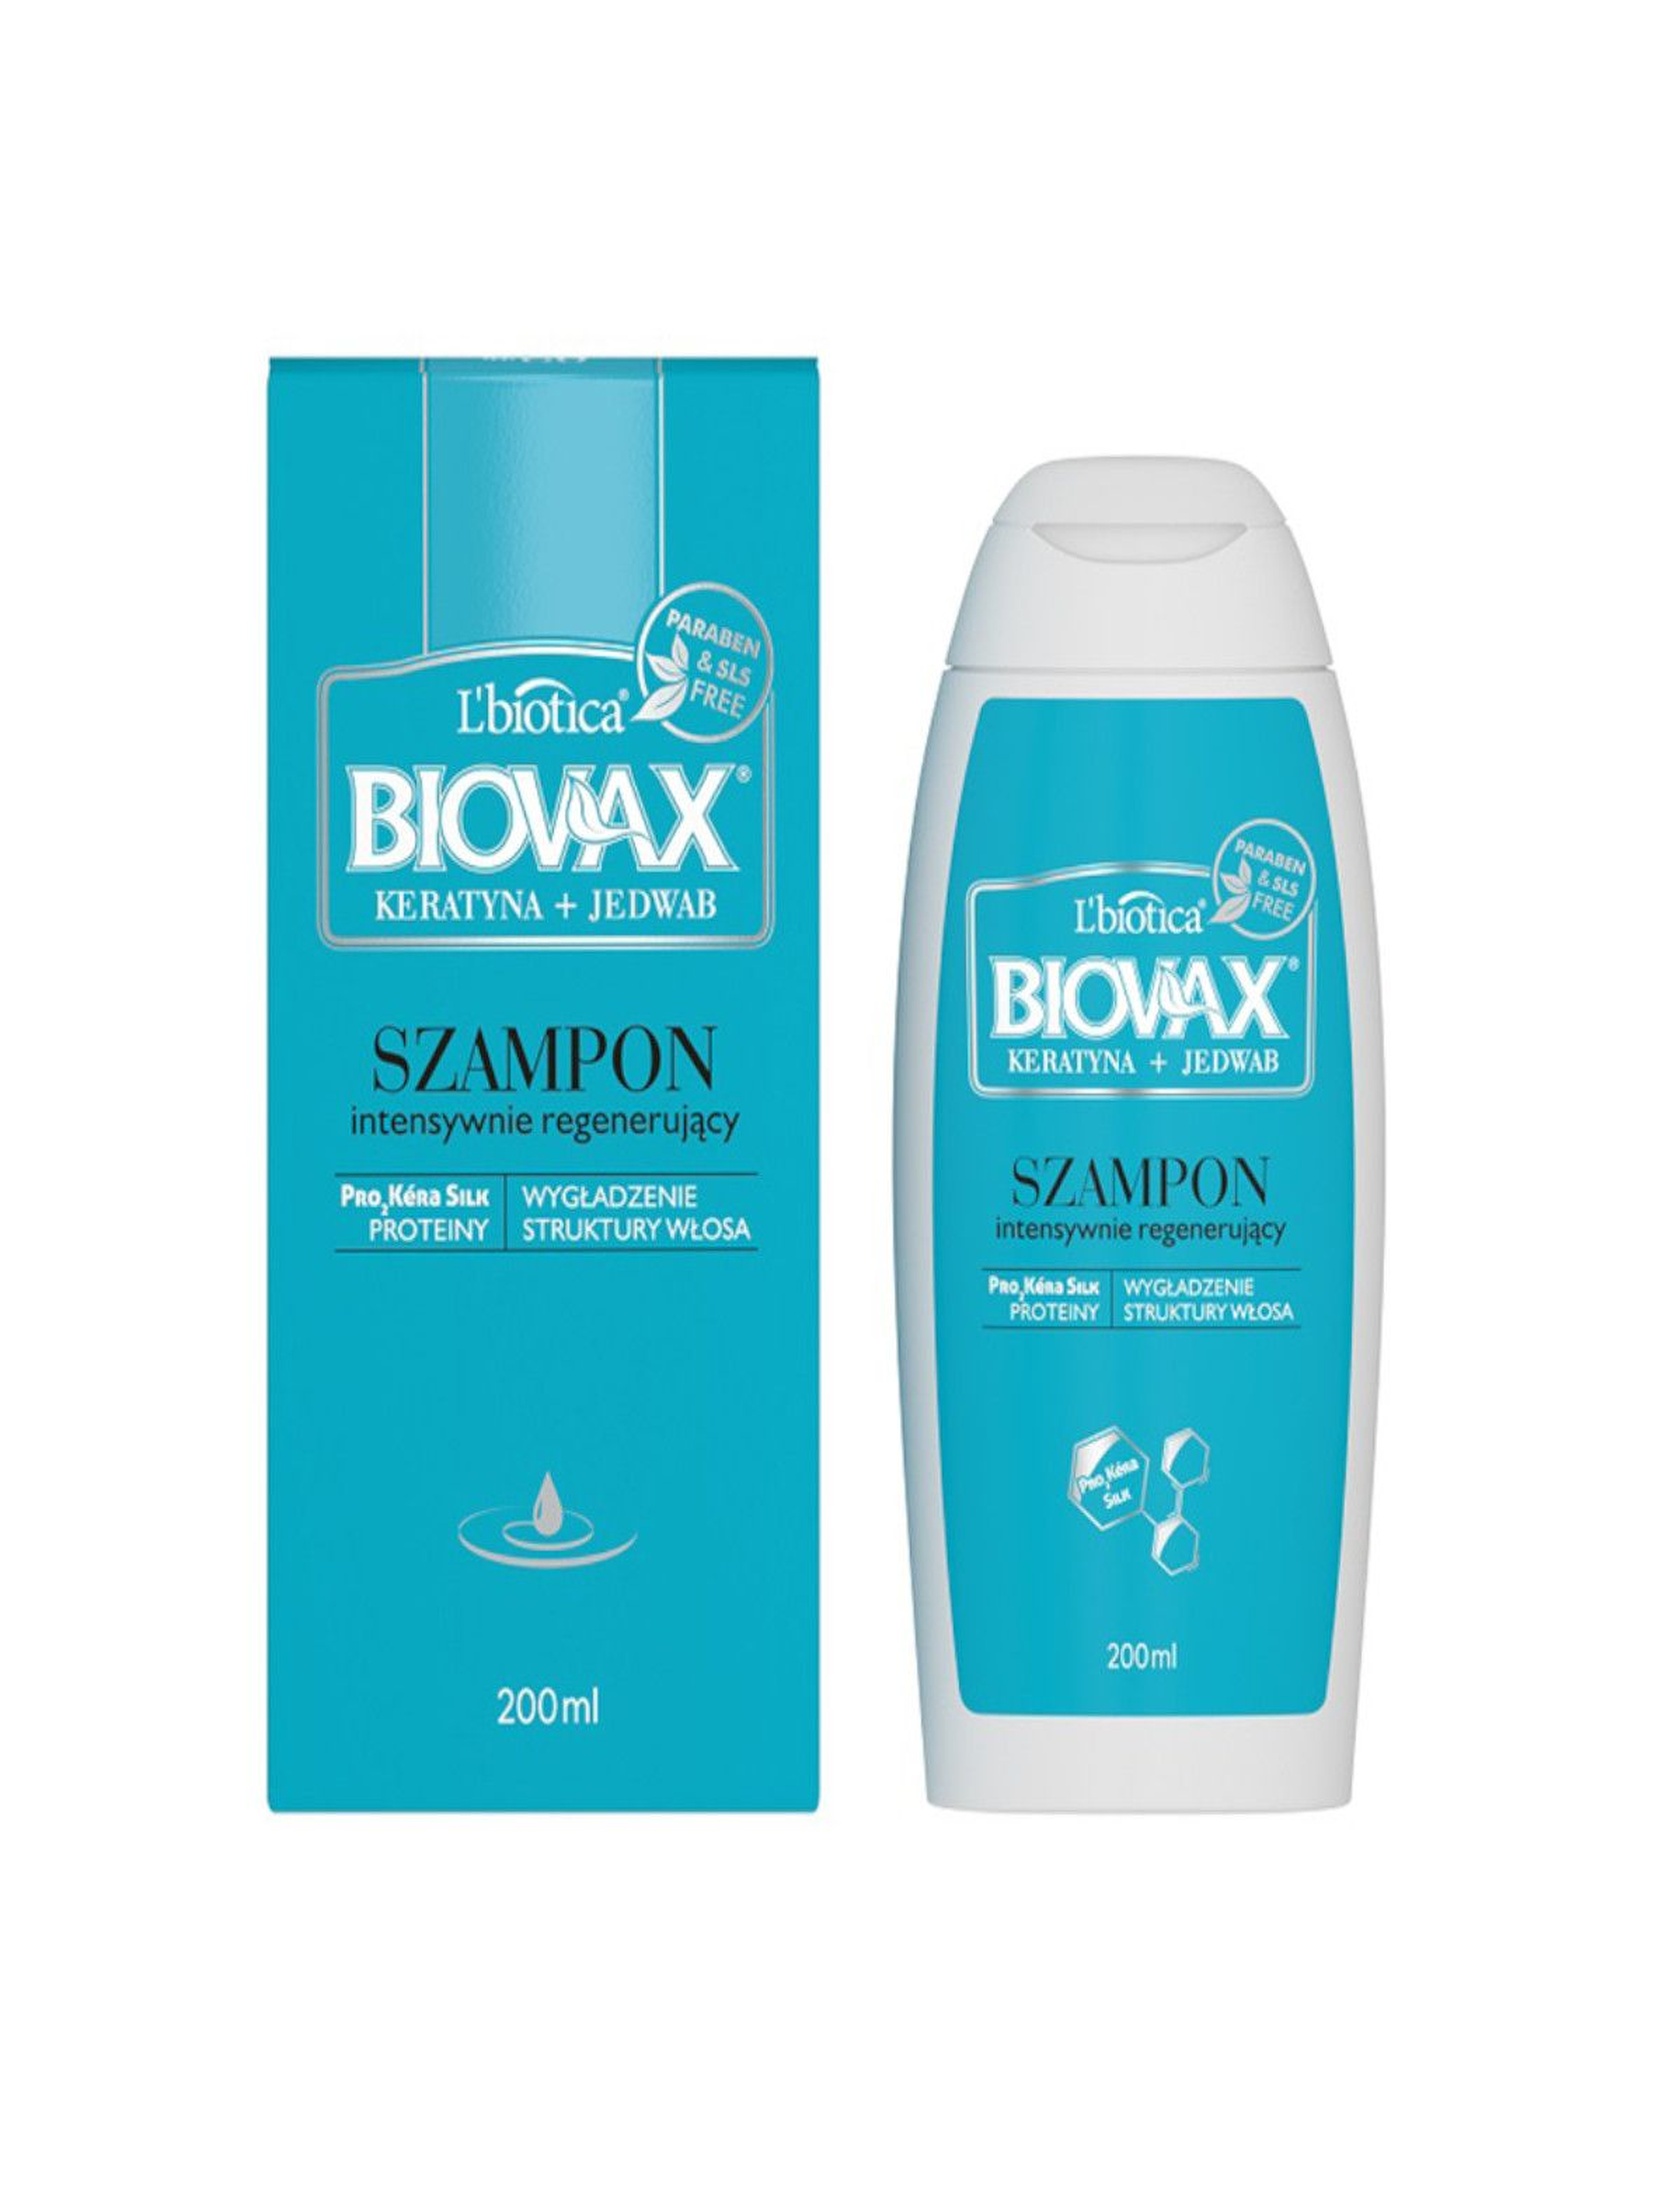 BIOVAX KERATYNA+JEDWAB szampon do każdego rodzaju włosów 200ml